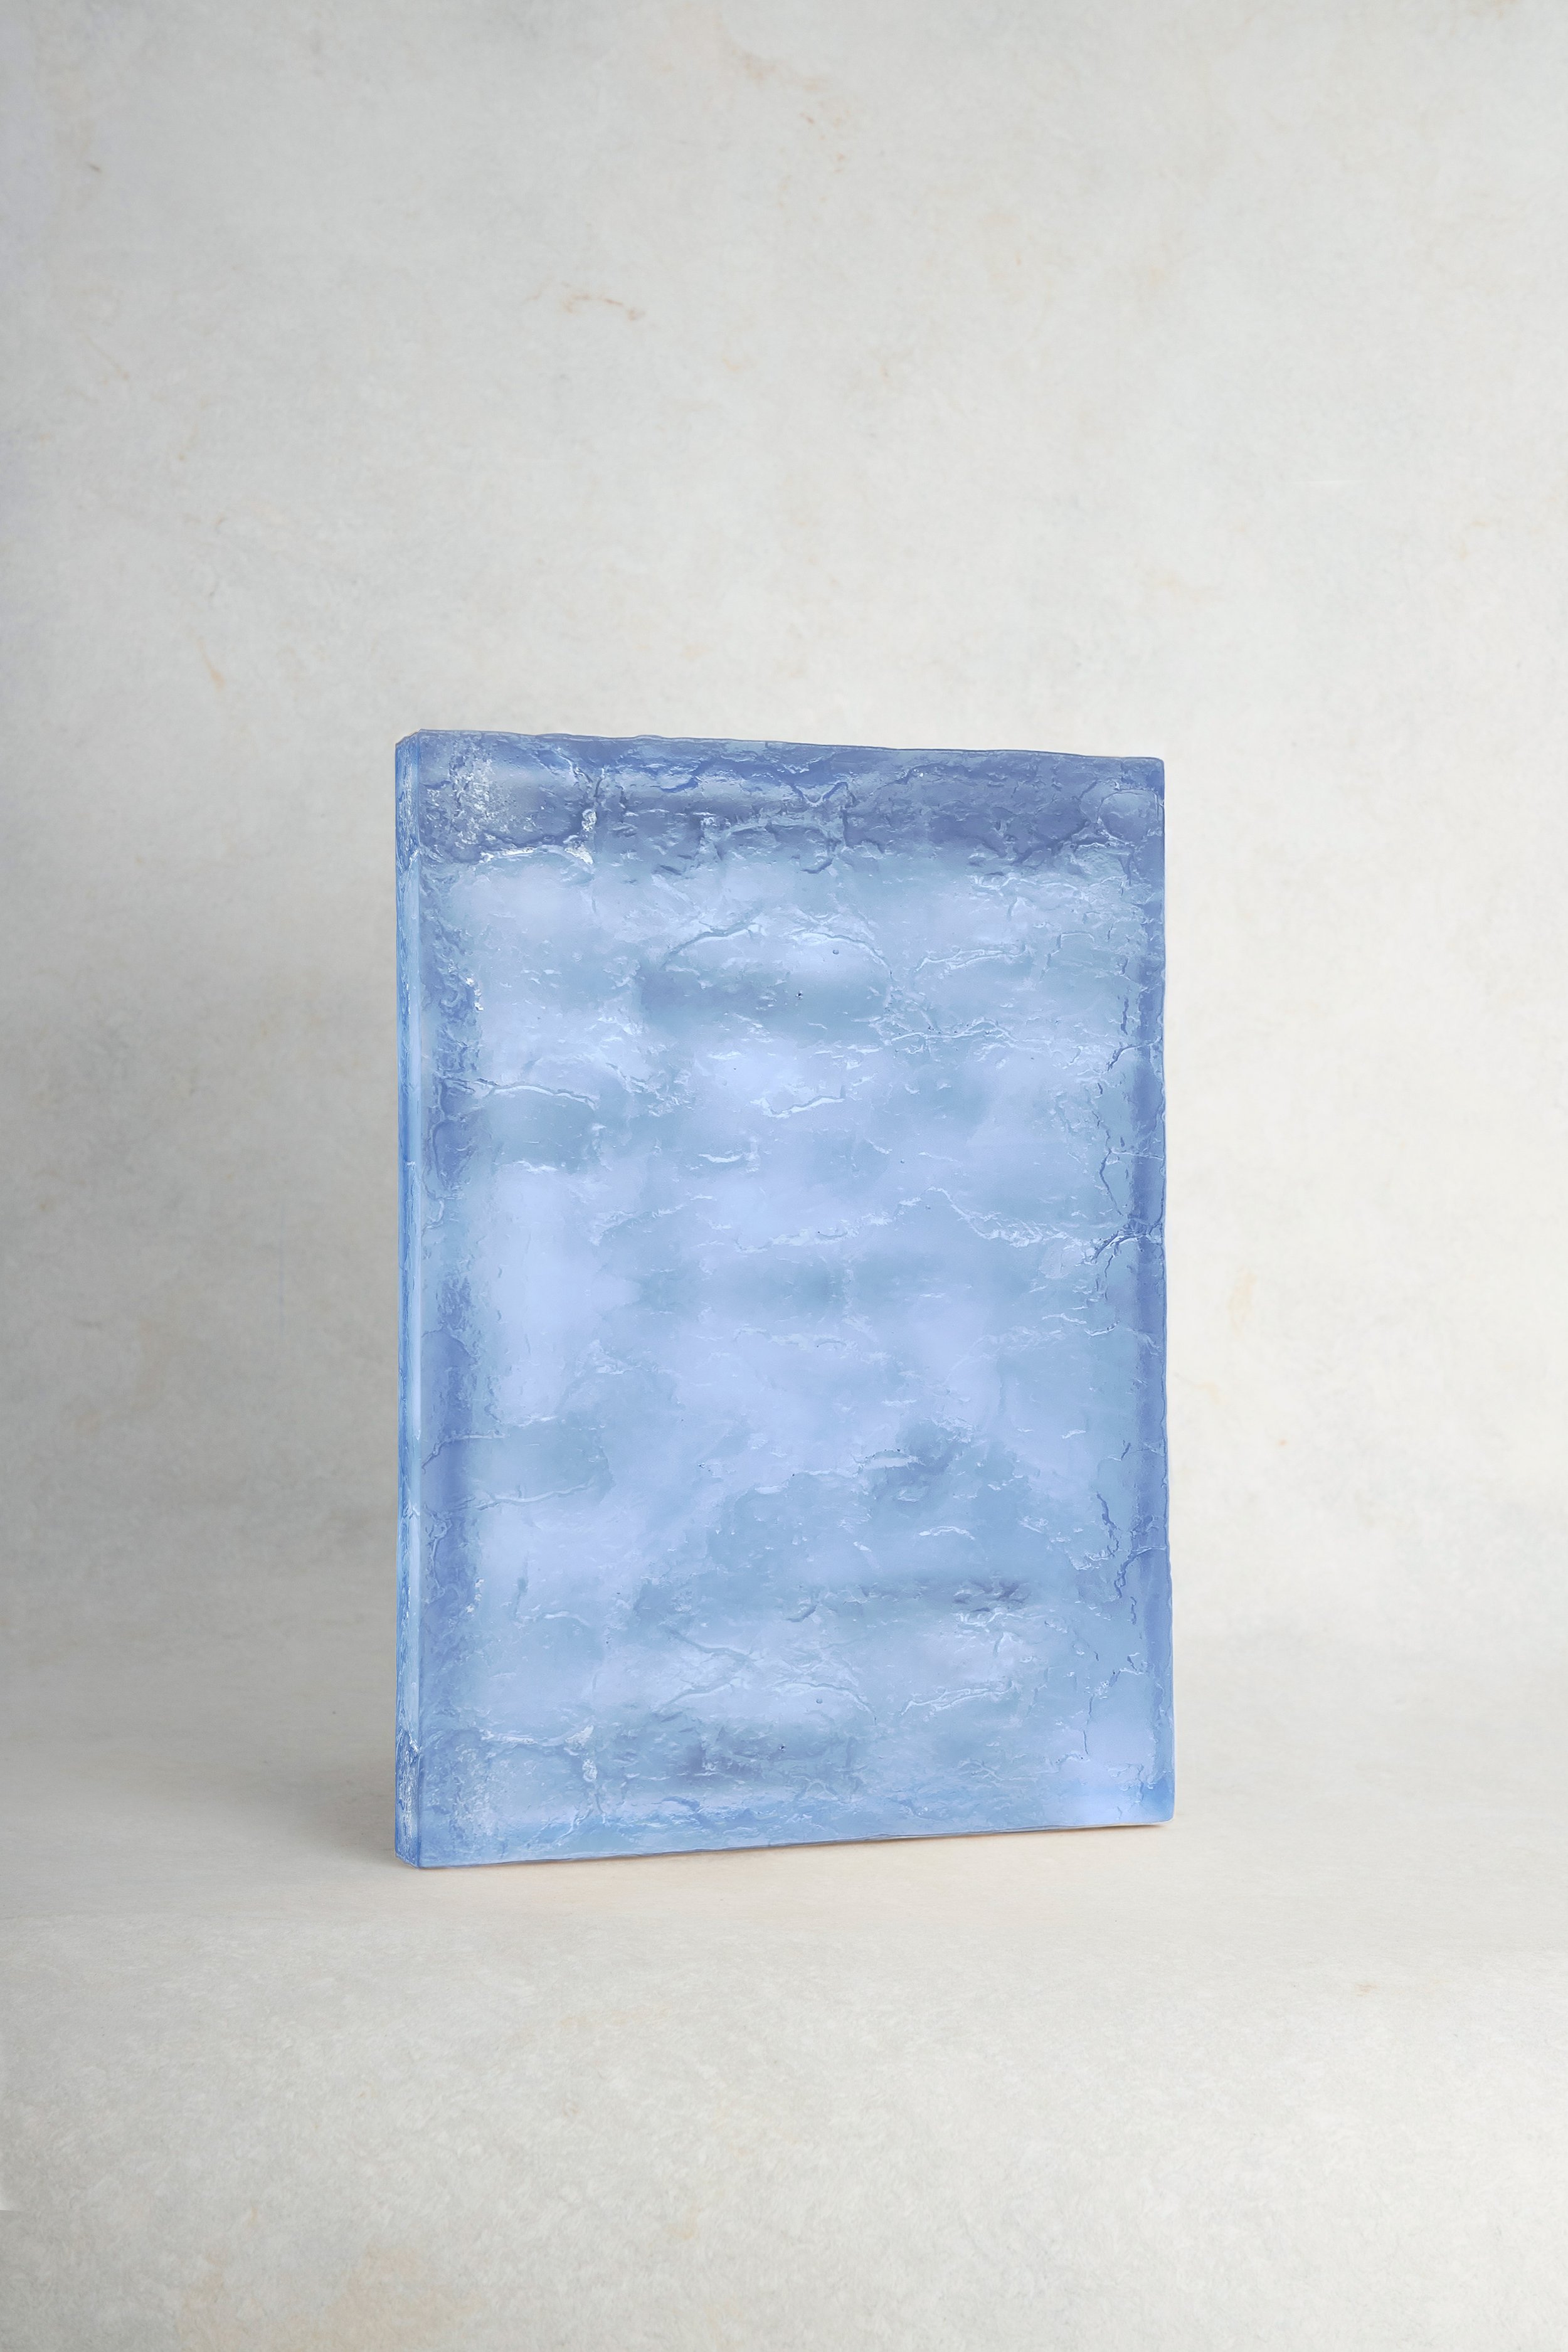  Bleu clair (06) / light blue  